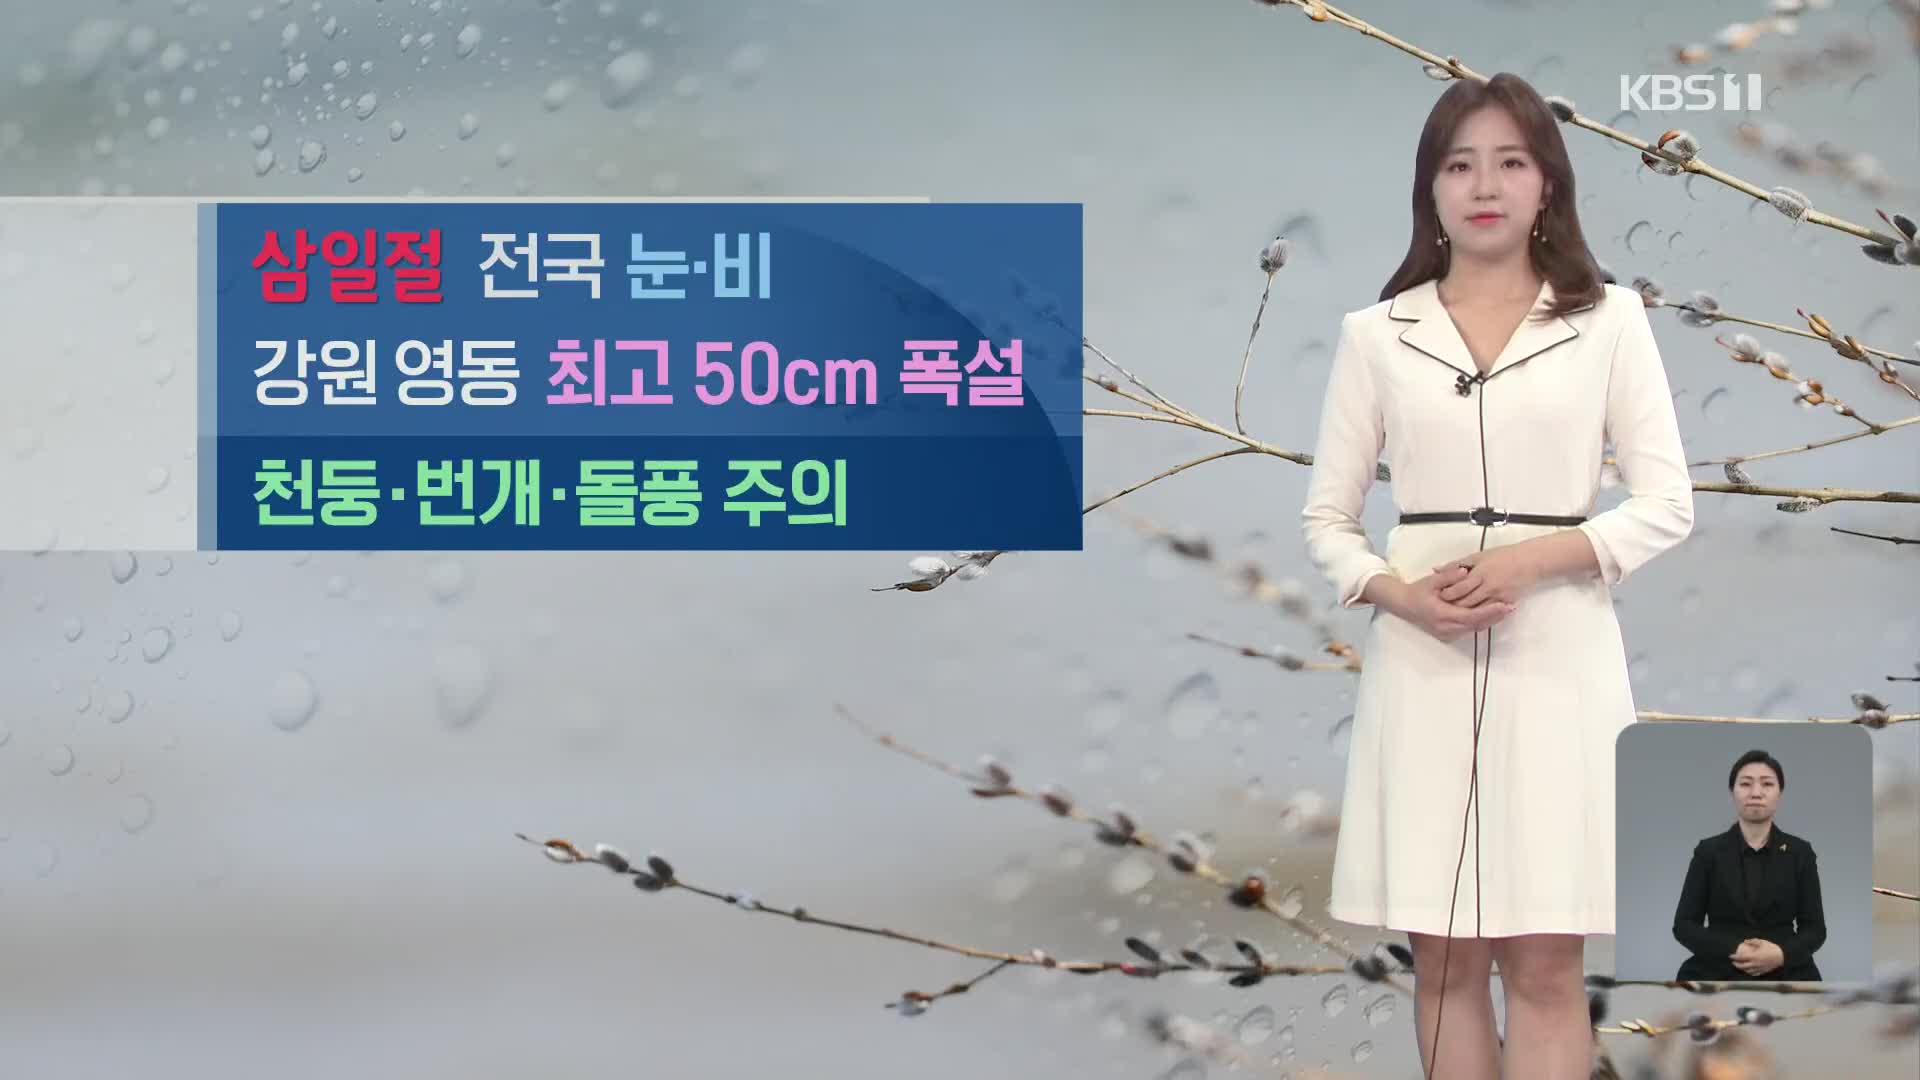 [광장 날씨] 삼일절, 전국에 많은 비나 눈…강원 영동 최고 50cm 폭설